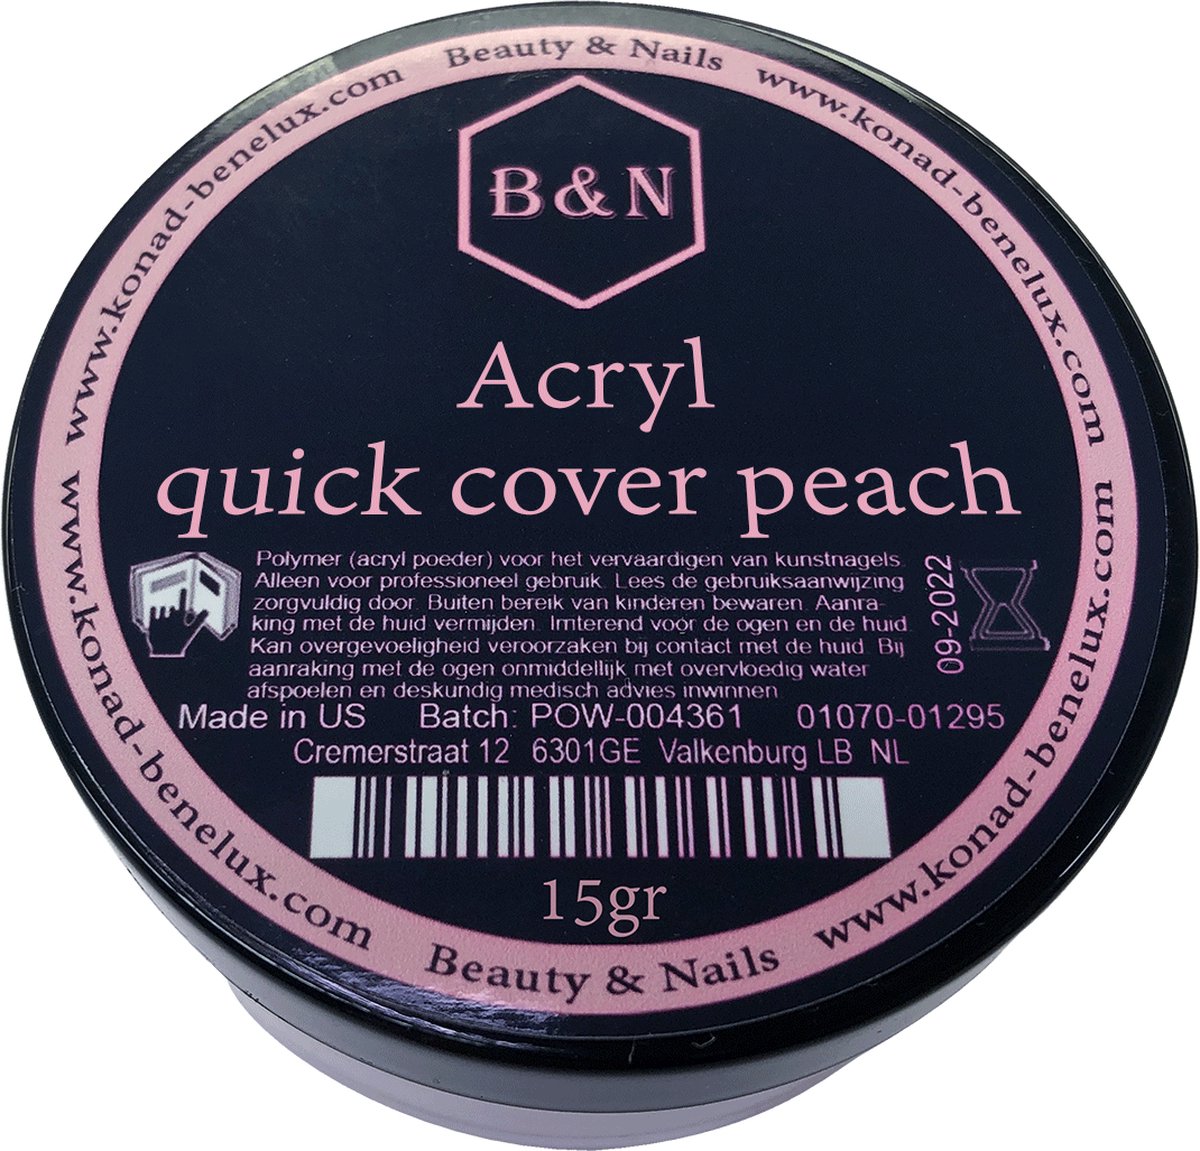 Acryl - quick cover peach - 15 gr | B&N - acrylpoeder - VEGAN - acrylpoeder